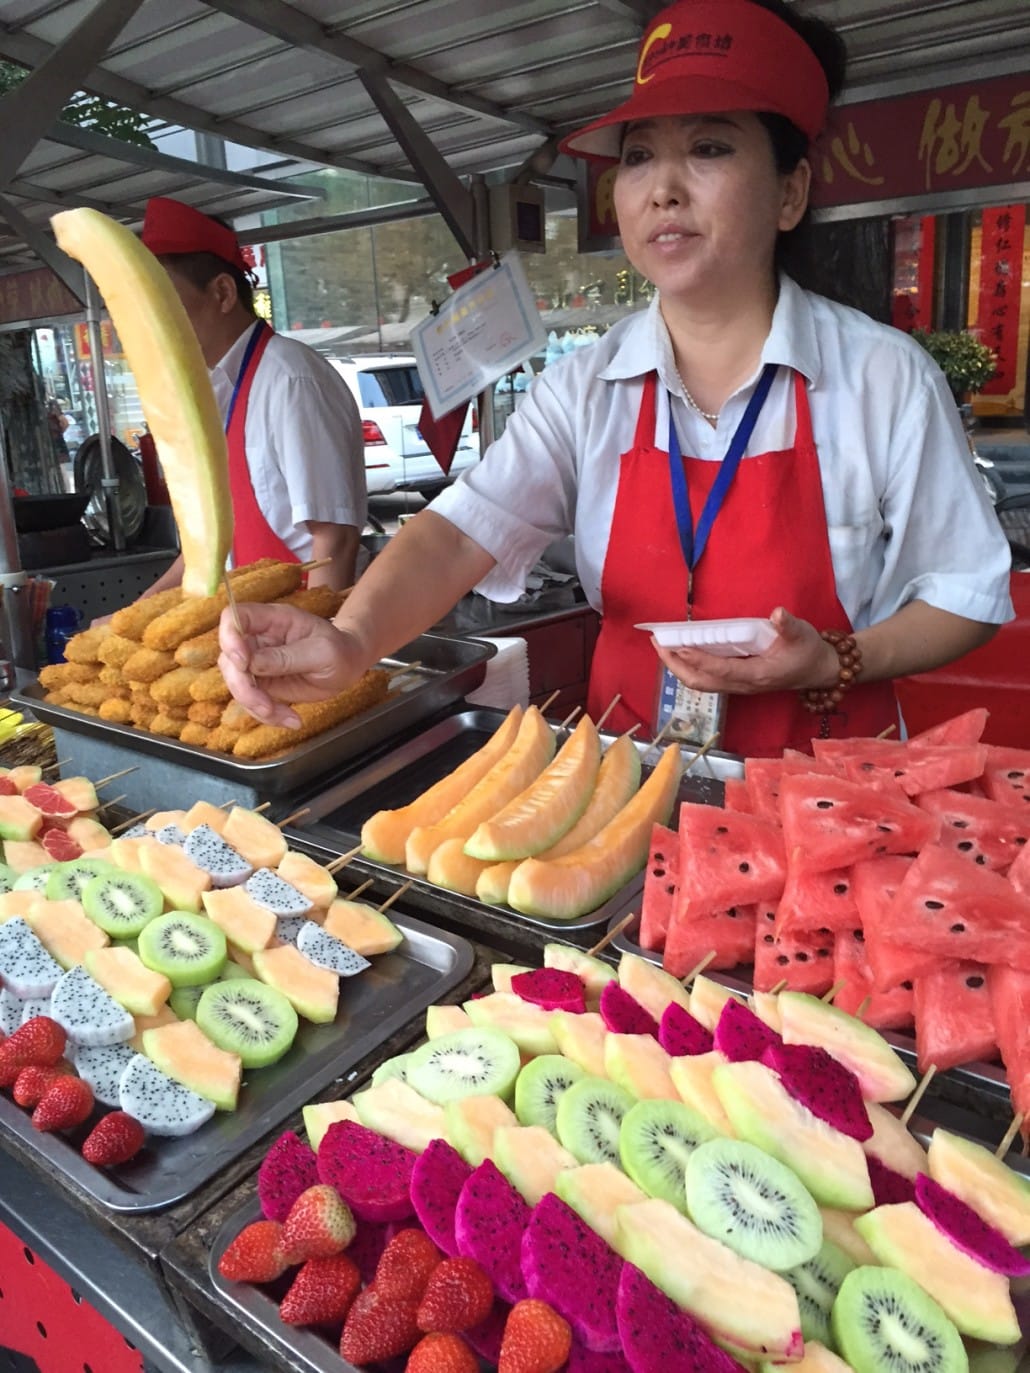 Street food in Beijing